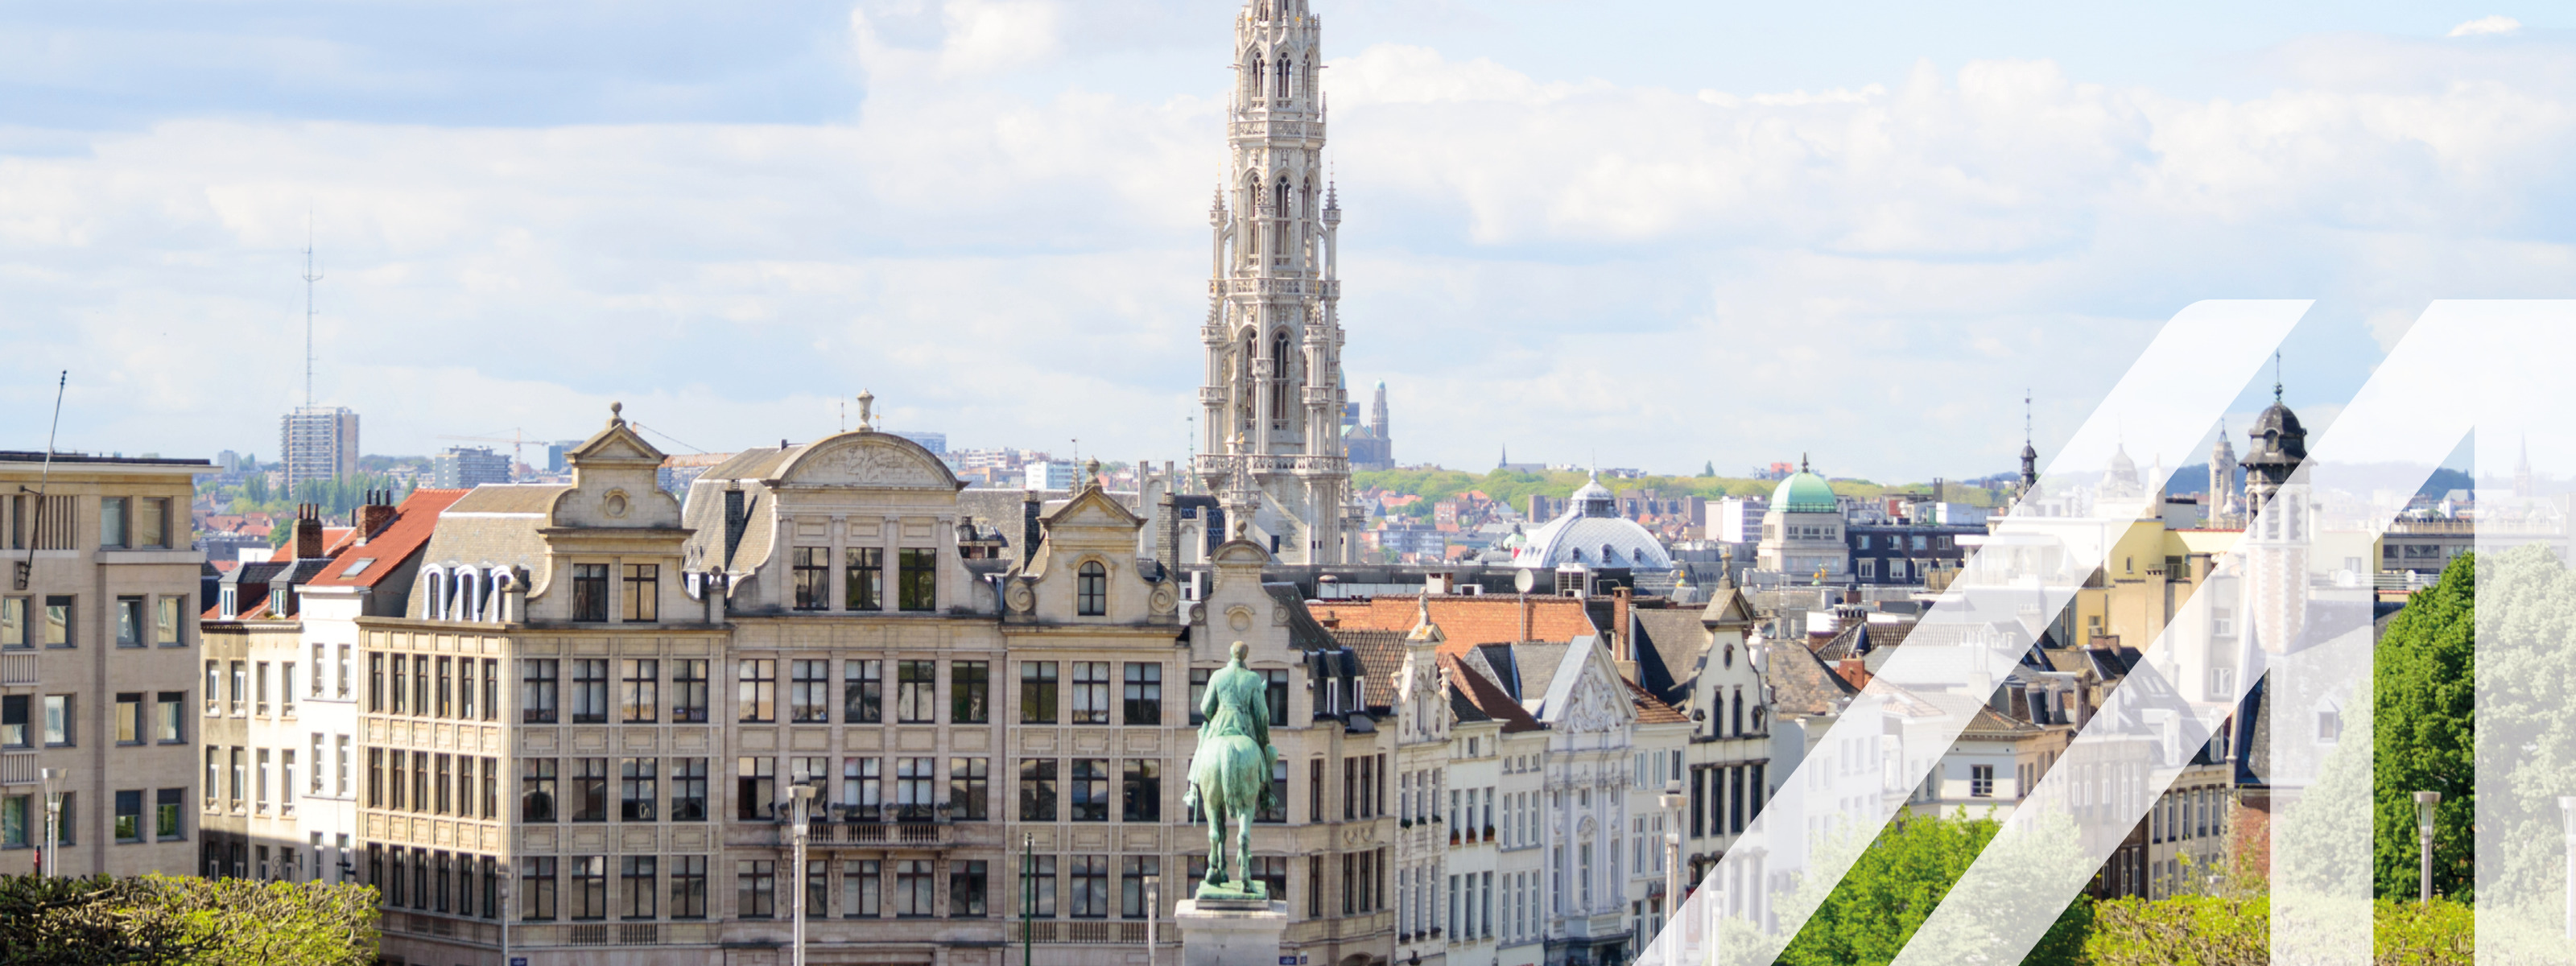 Stadtansicht von Brüssel mit einem historischen Turm im Zentrum, rund um die alten Häuser und das Reiterstandbild ist ein Park angelegt. Über das Bild wurde ein weißes Austria A gelegt.